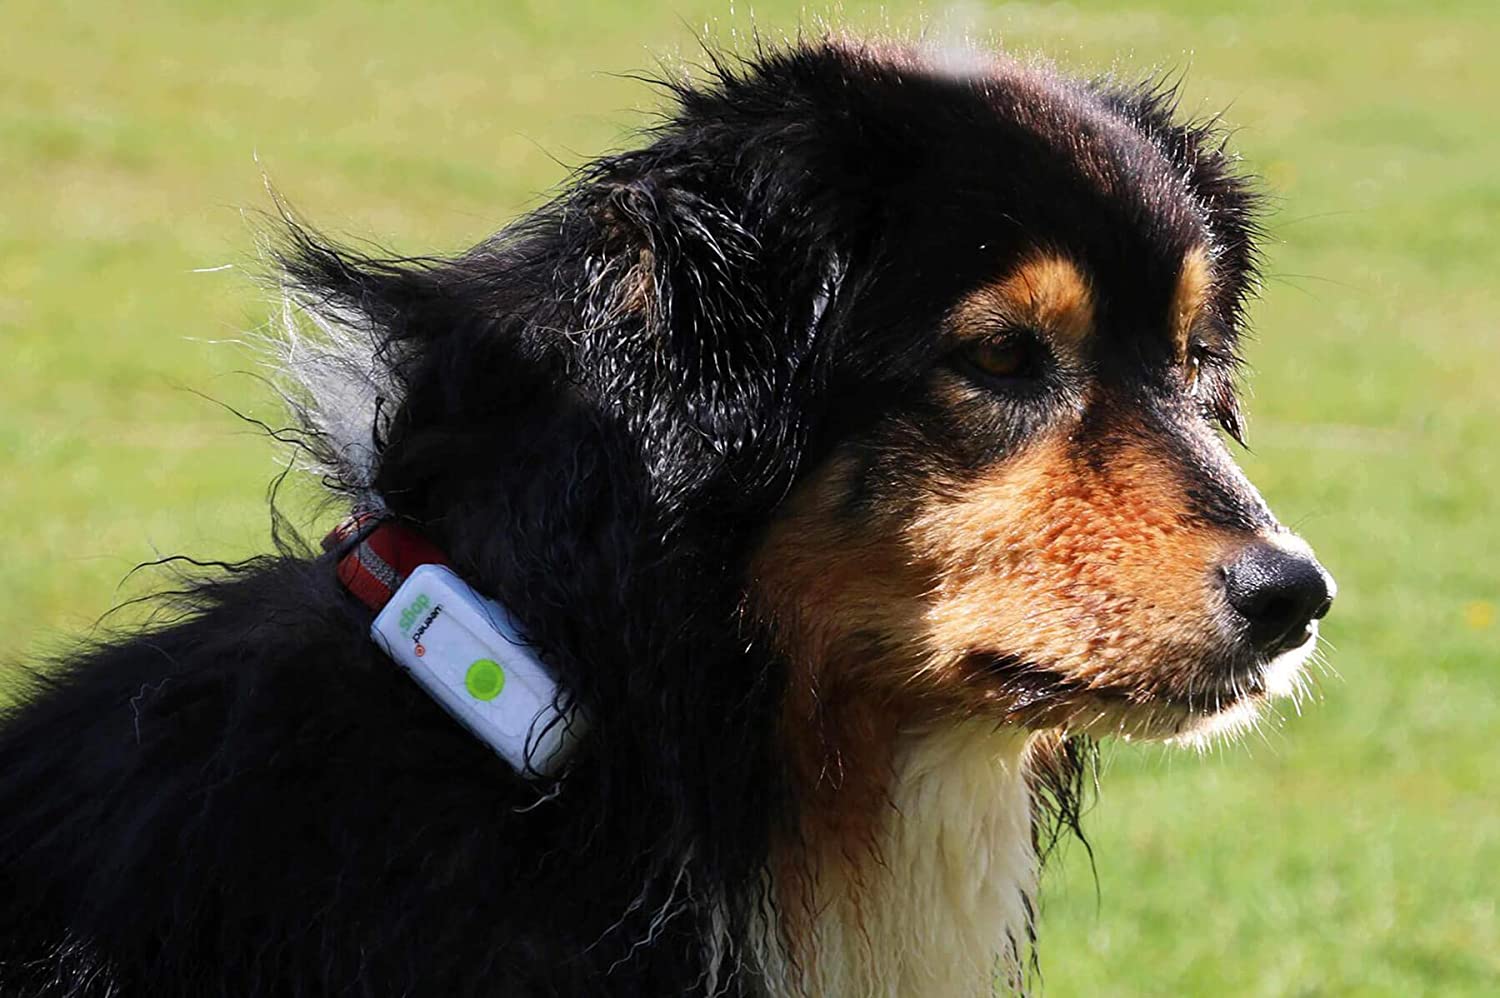  Weenect Dogs 2 - El collar GPS para perros más pequeño del mundo 